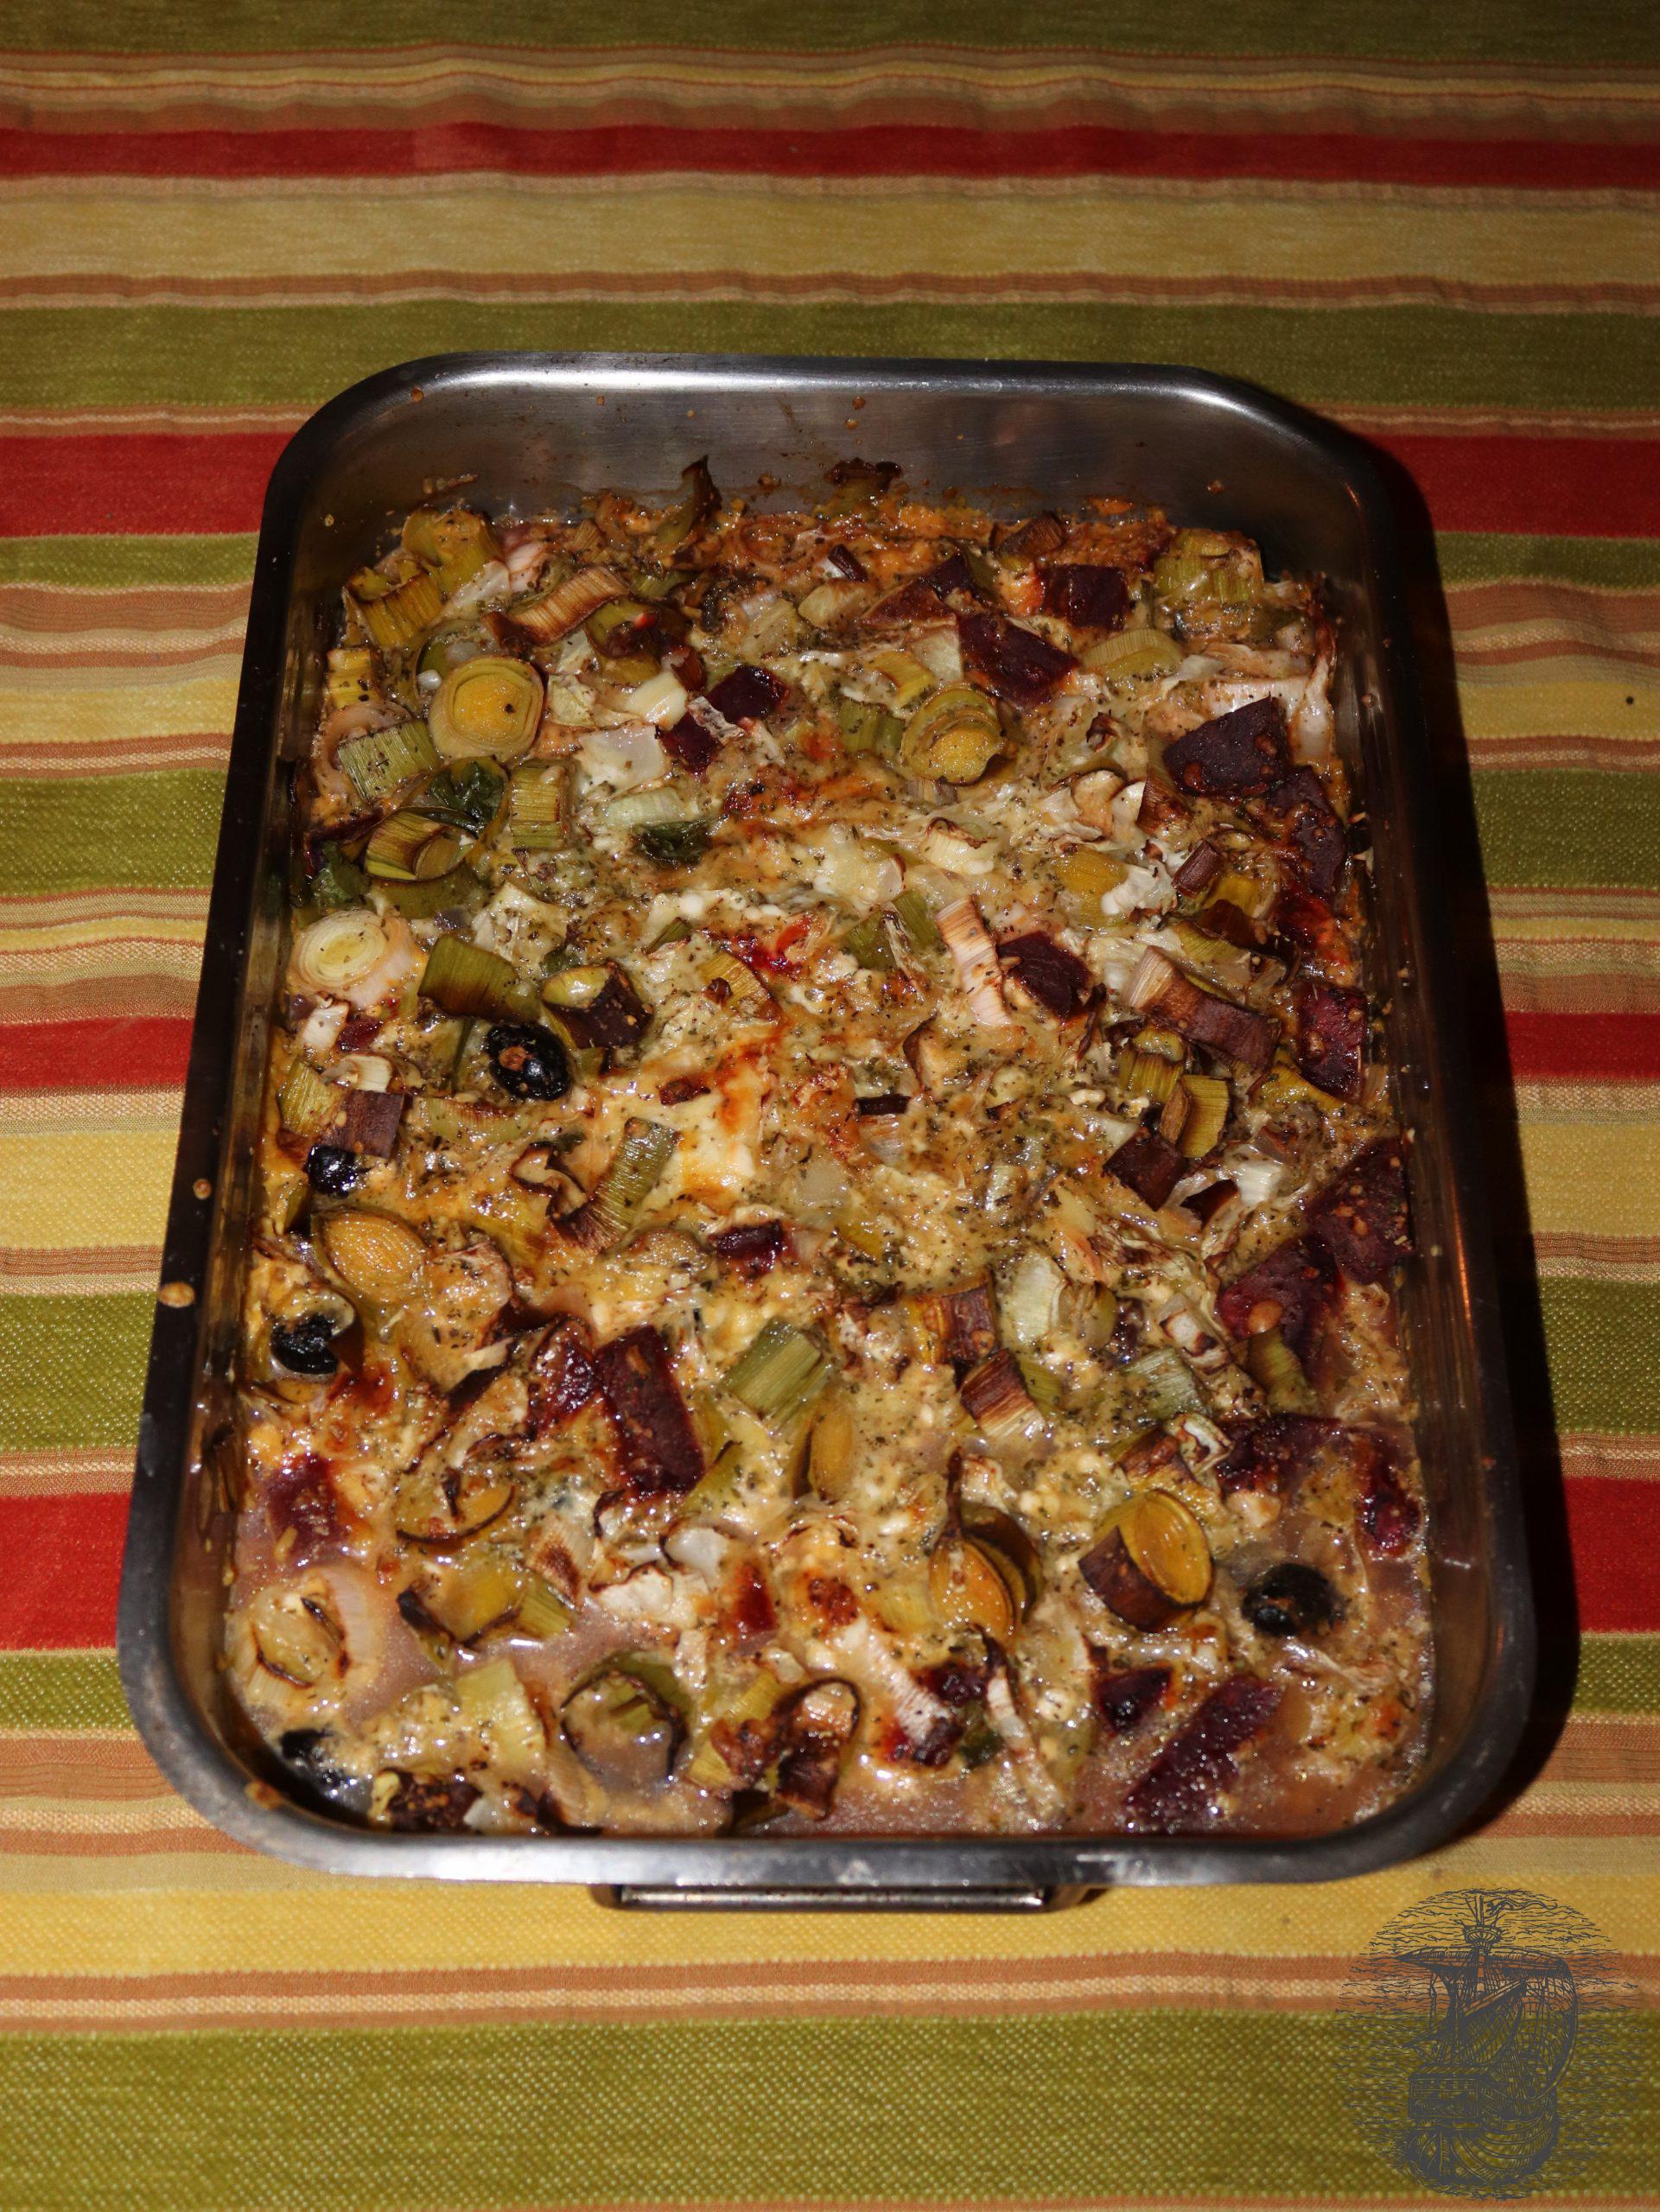 winter vegetables casserole - a winter dish